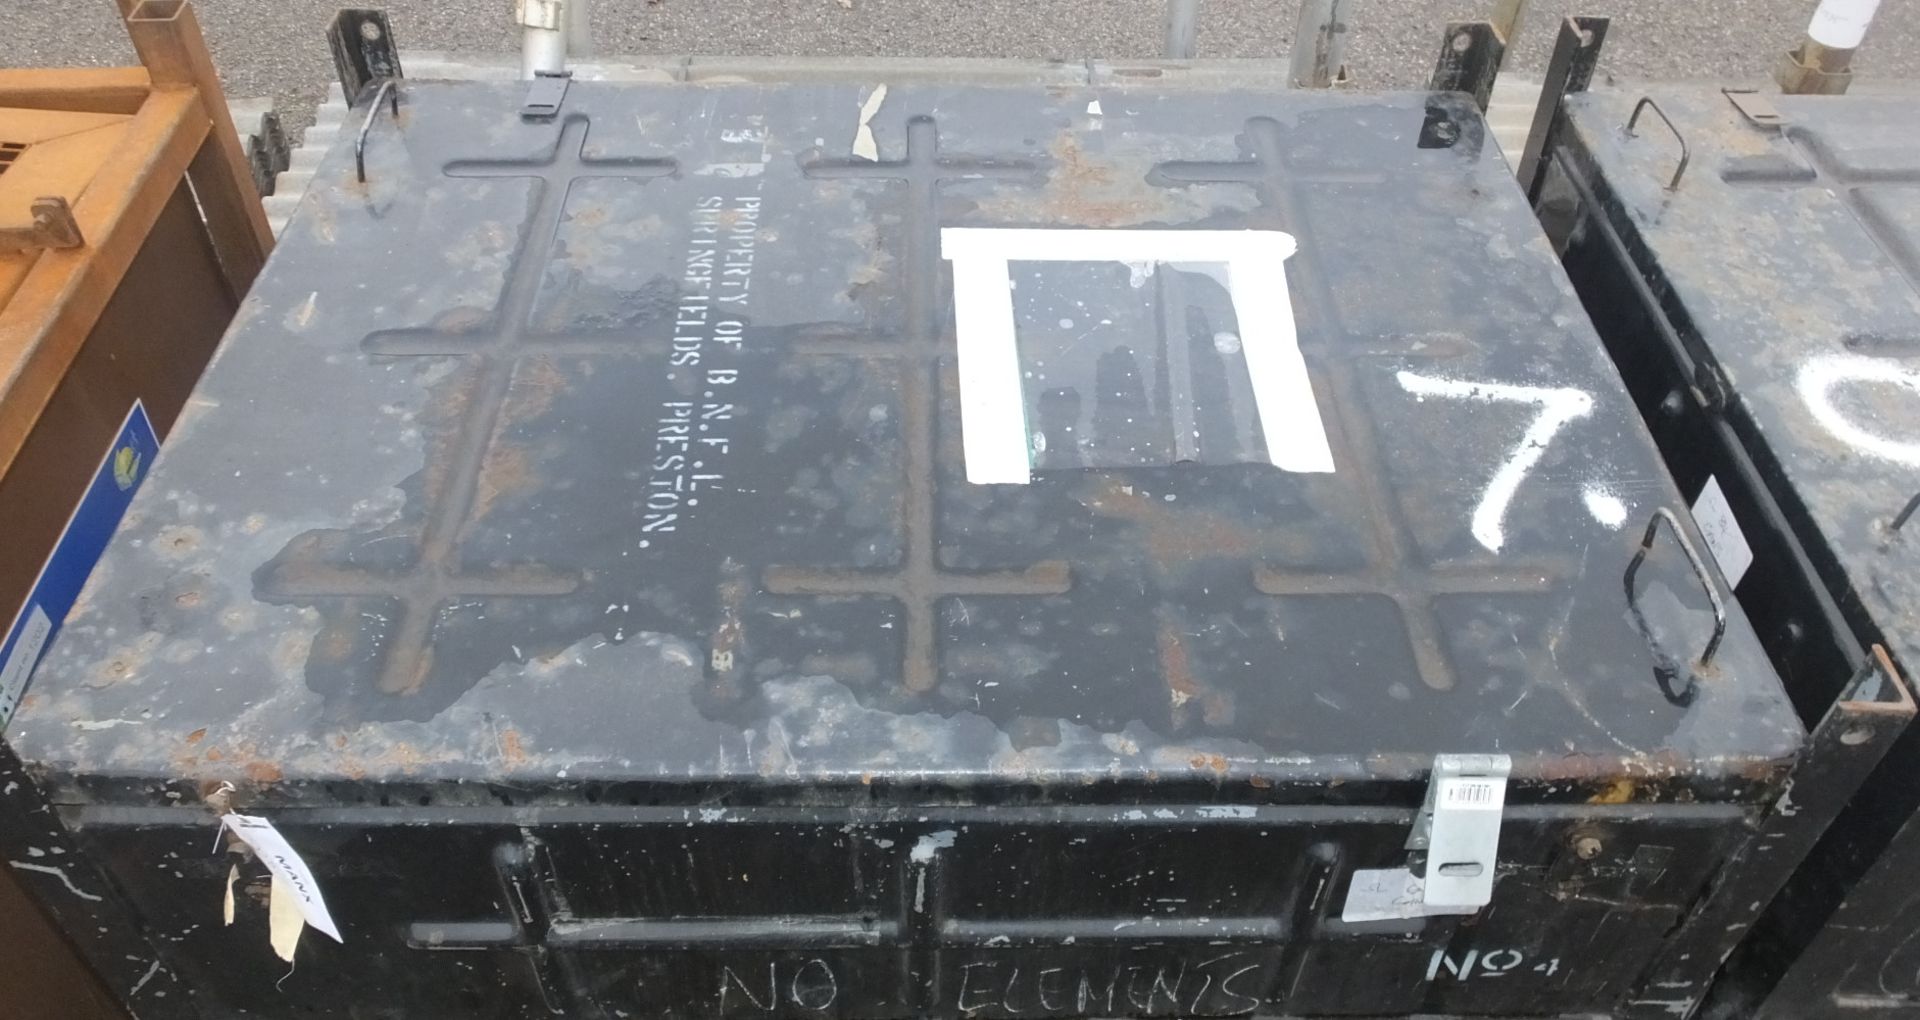 2x Metal storage bins - L1240 x D1000 x H565mm - Image 2 of 2